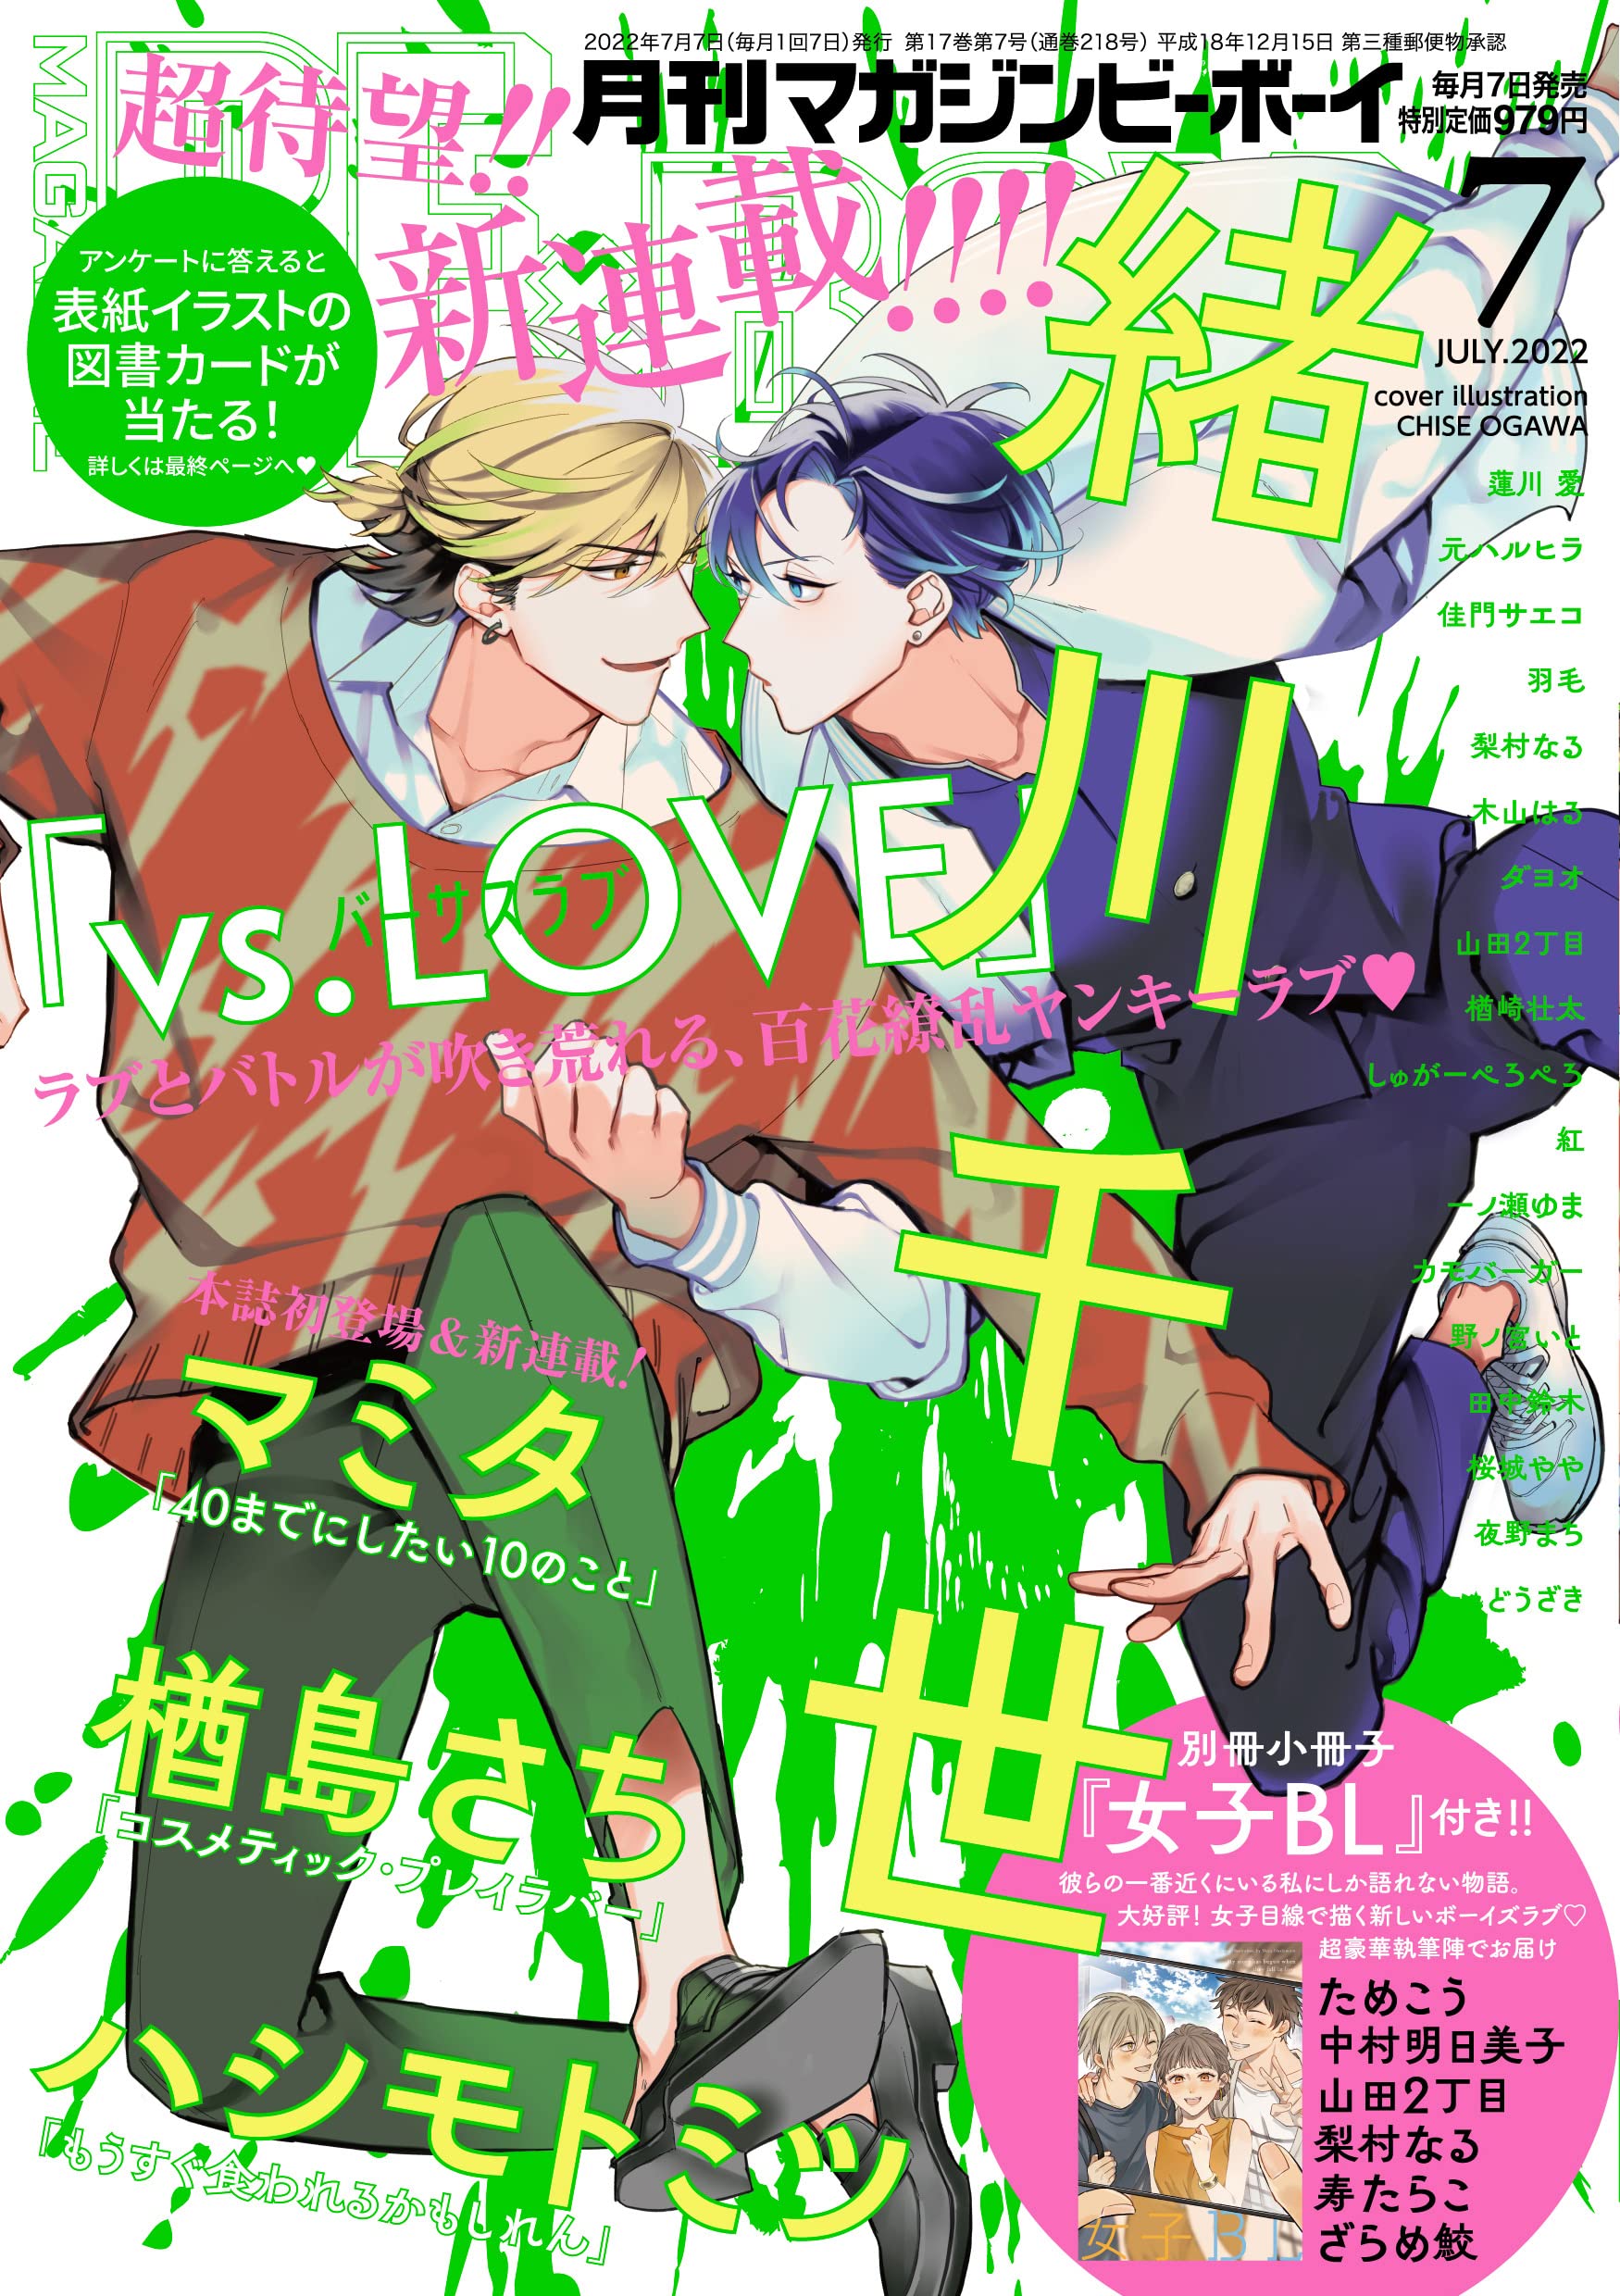 Boys Love (Yaoi) Comics - B-boy COMICS (MAGAZINE BE×BOY (マガジンビーボーイ) 2022年07月号[雑誌]) / Tanaka Suzuki & Sakuragi Yaya & Ogawa Chise & 紅 & Hasukawa Ai